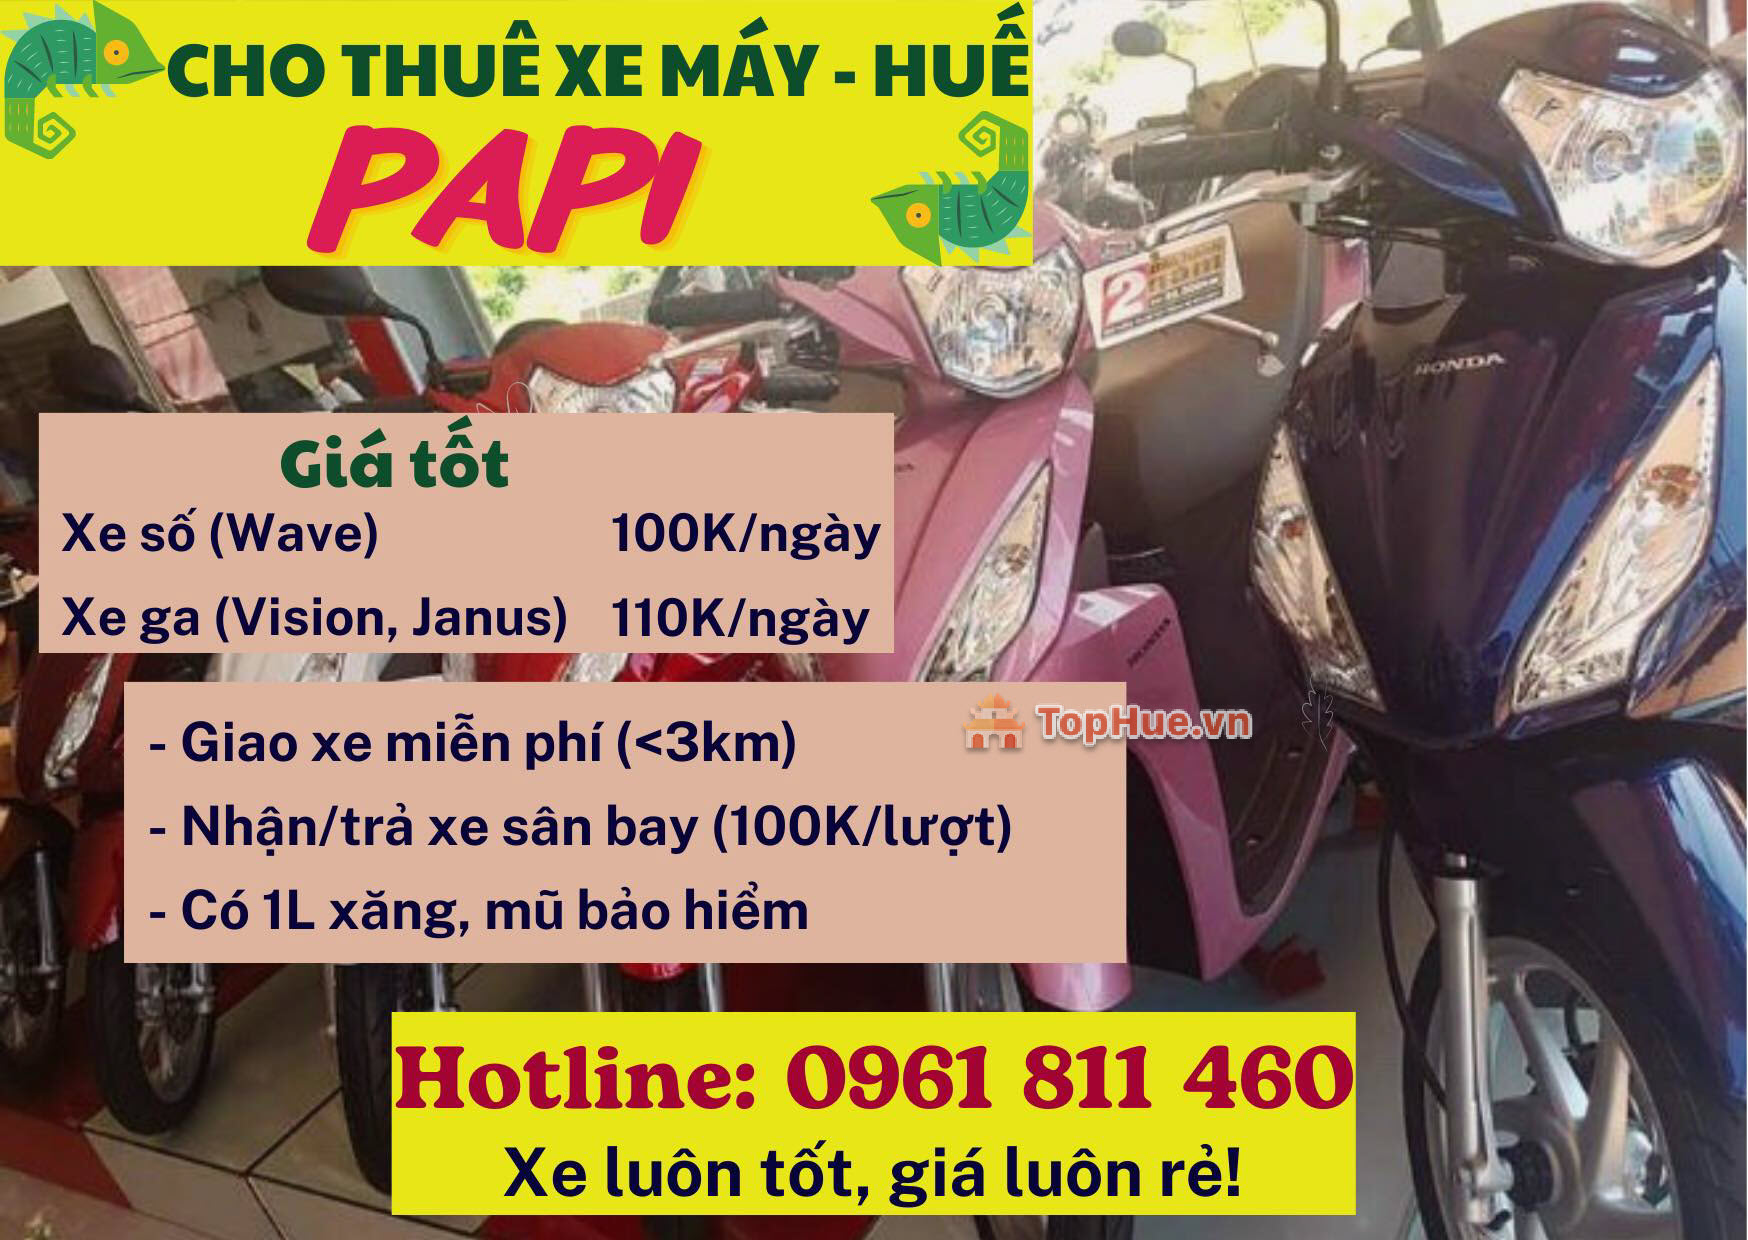 Dịch vụ cho thuê xe máy PaPi - Huế